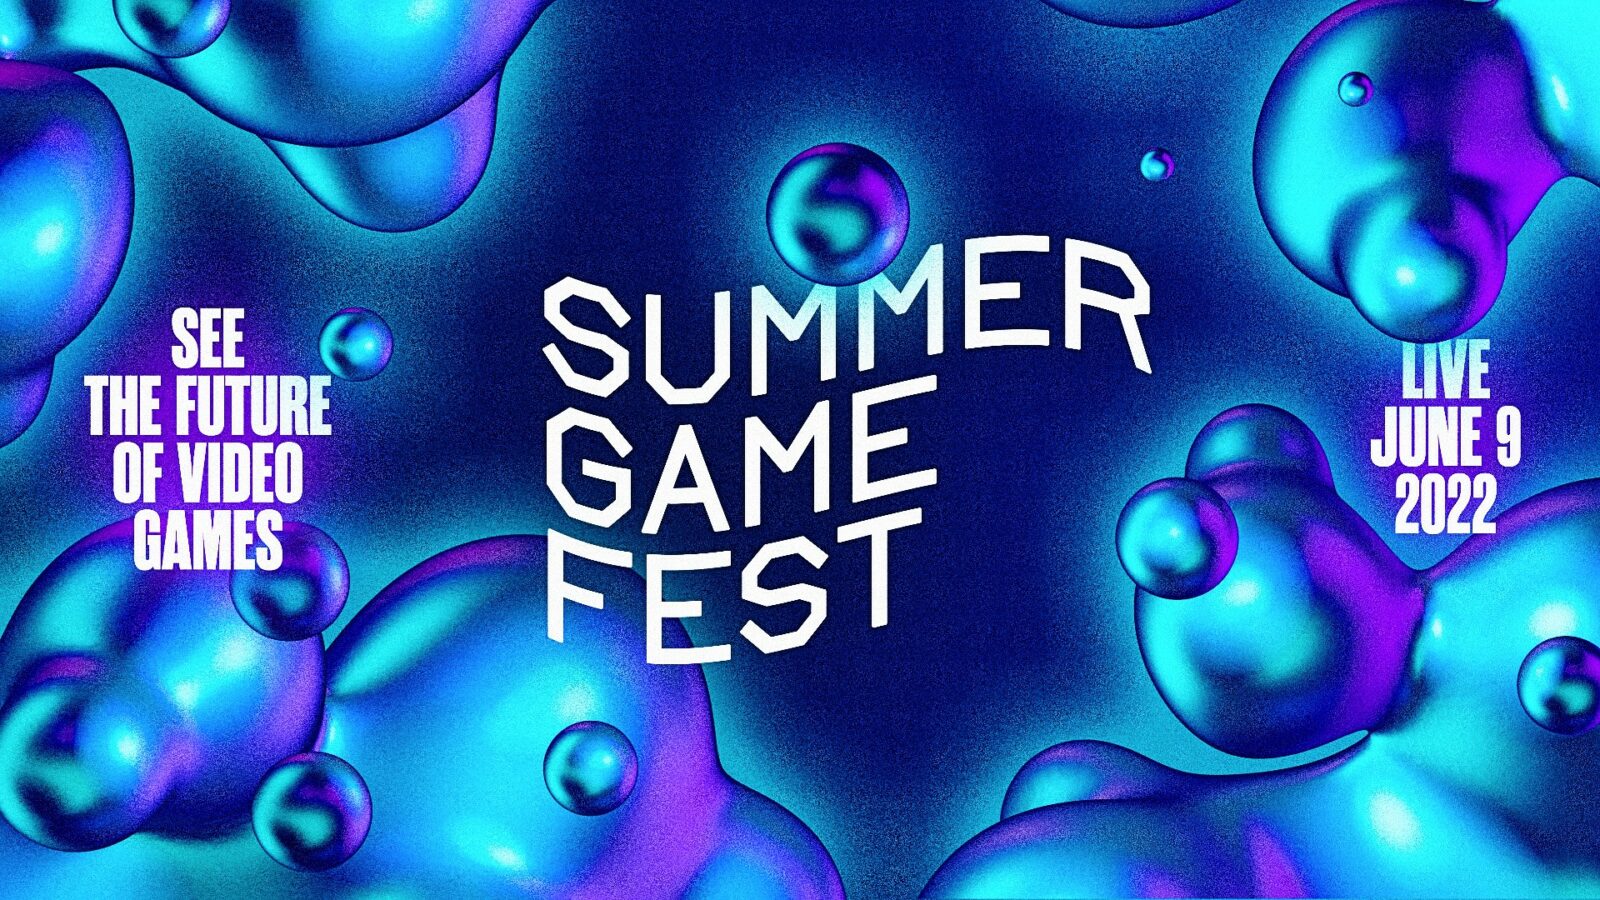 Il nuovo video promozionale del Summer Game Fest 2022 aumenta l'attesa per il prossimo spettacolo